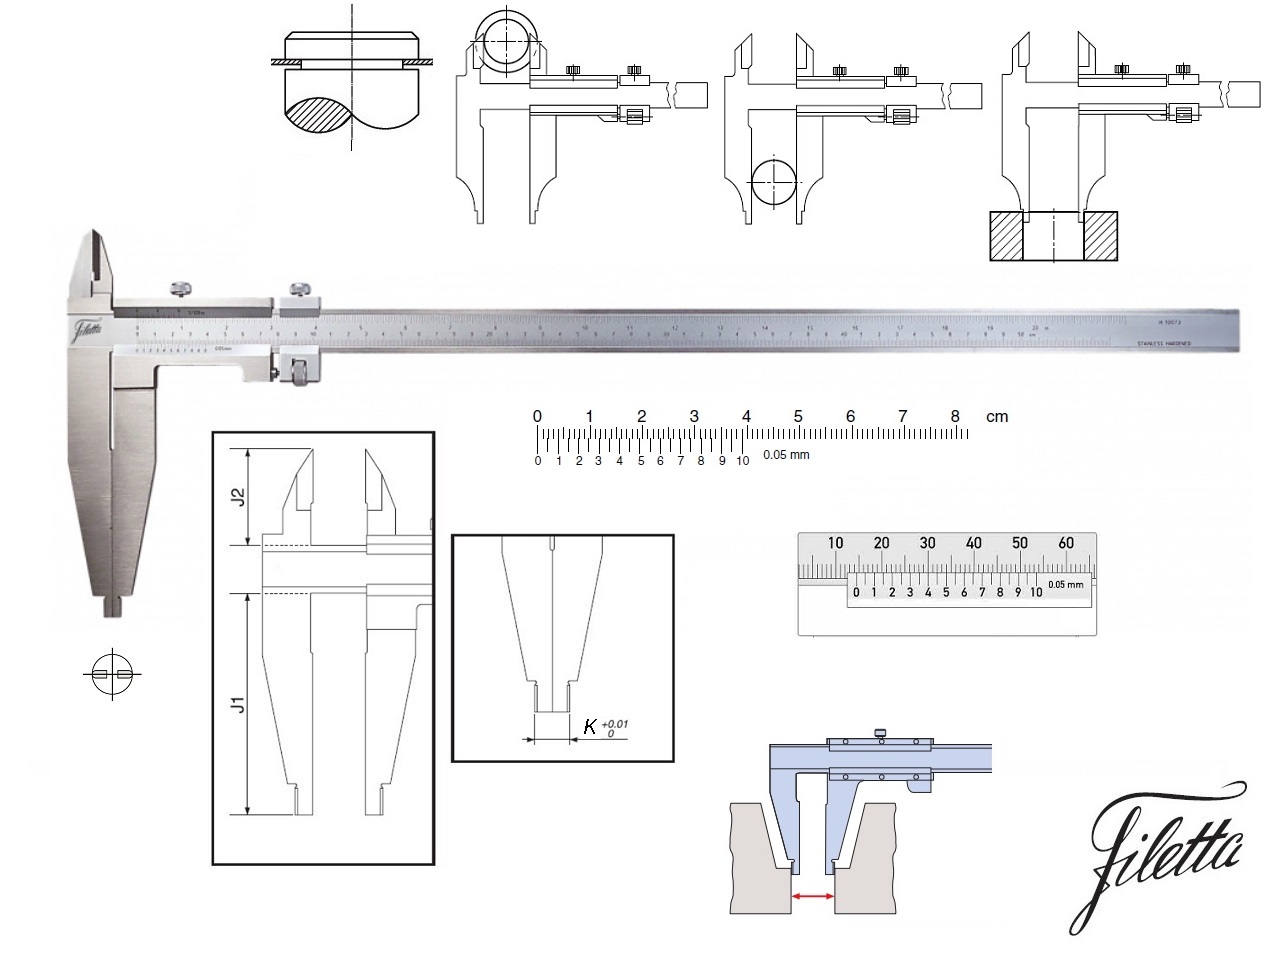 Posuvné měřítko Filetta 0-300 mm, čelisti 90 mm, s měřicími nožíky pro vnější měření